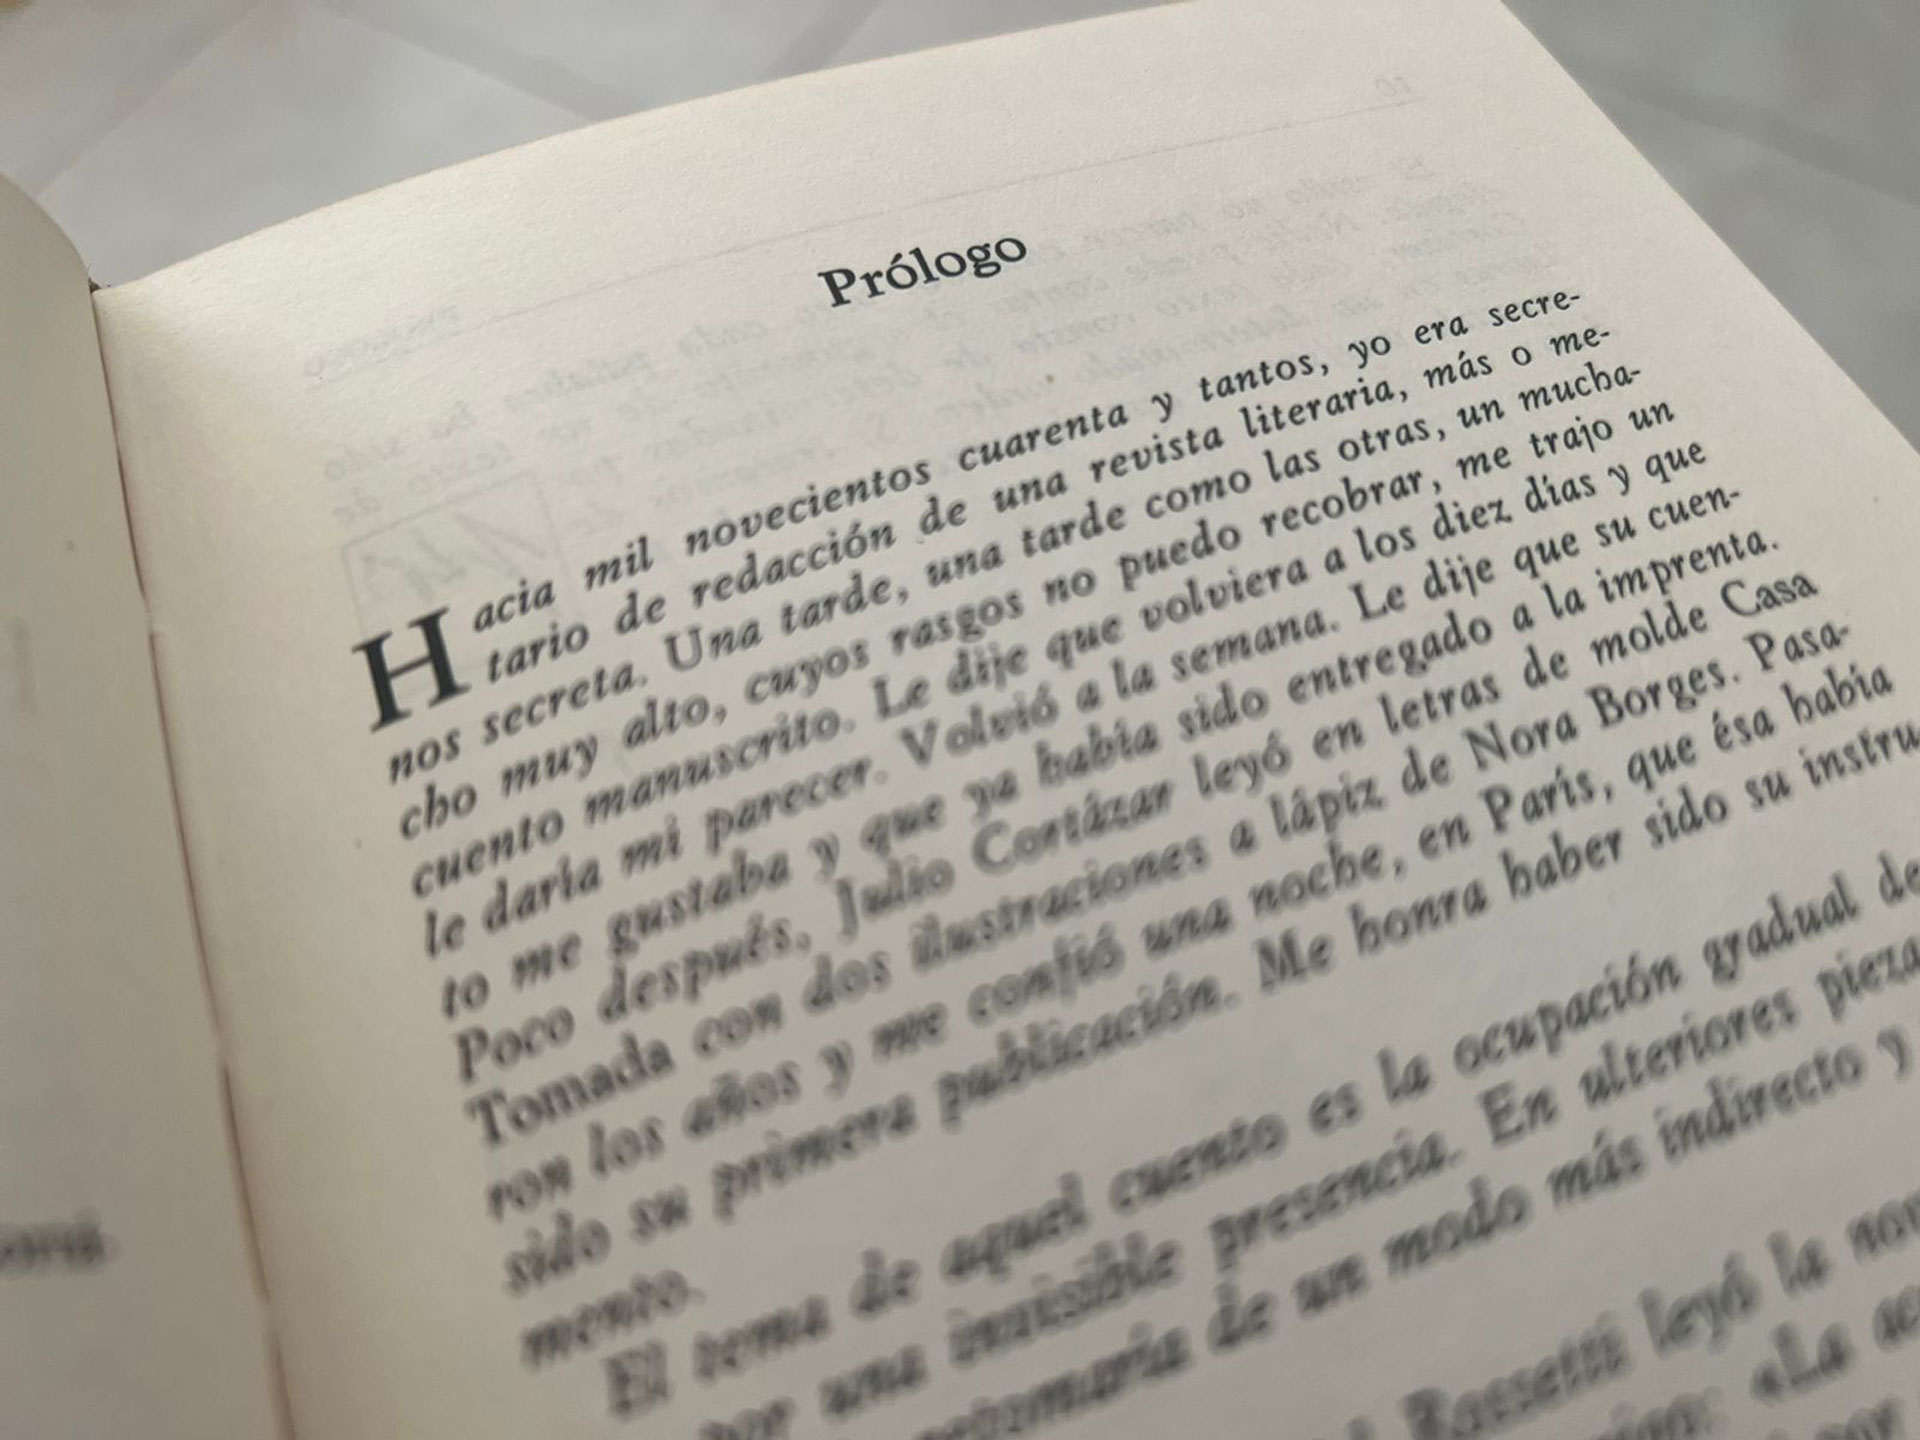 Según Borges cuatro veces se cruzó con Cortázar. En el prólogo a sus cuentos, recuerda dos de esos encuentros.